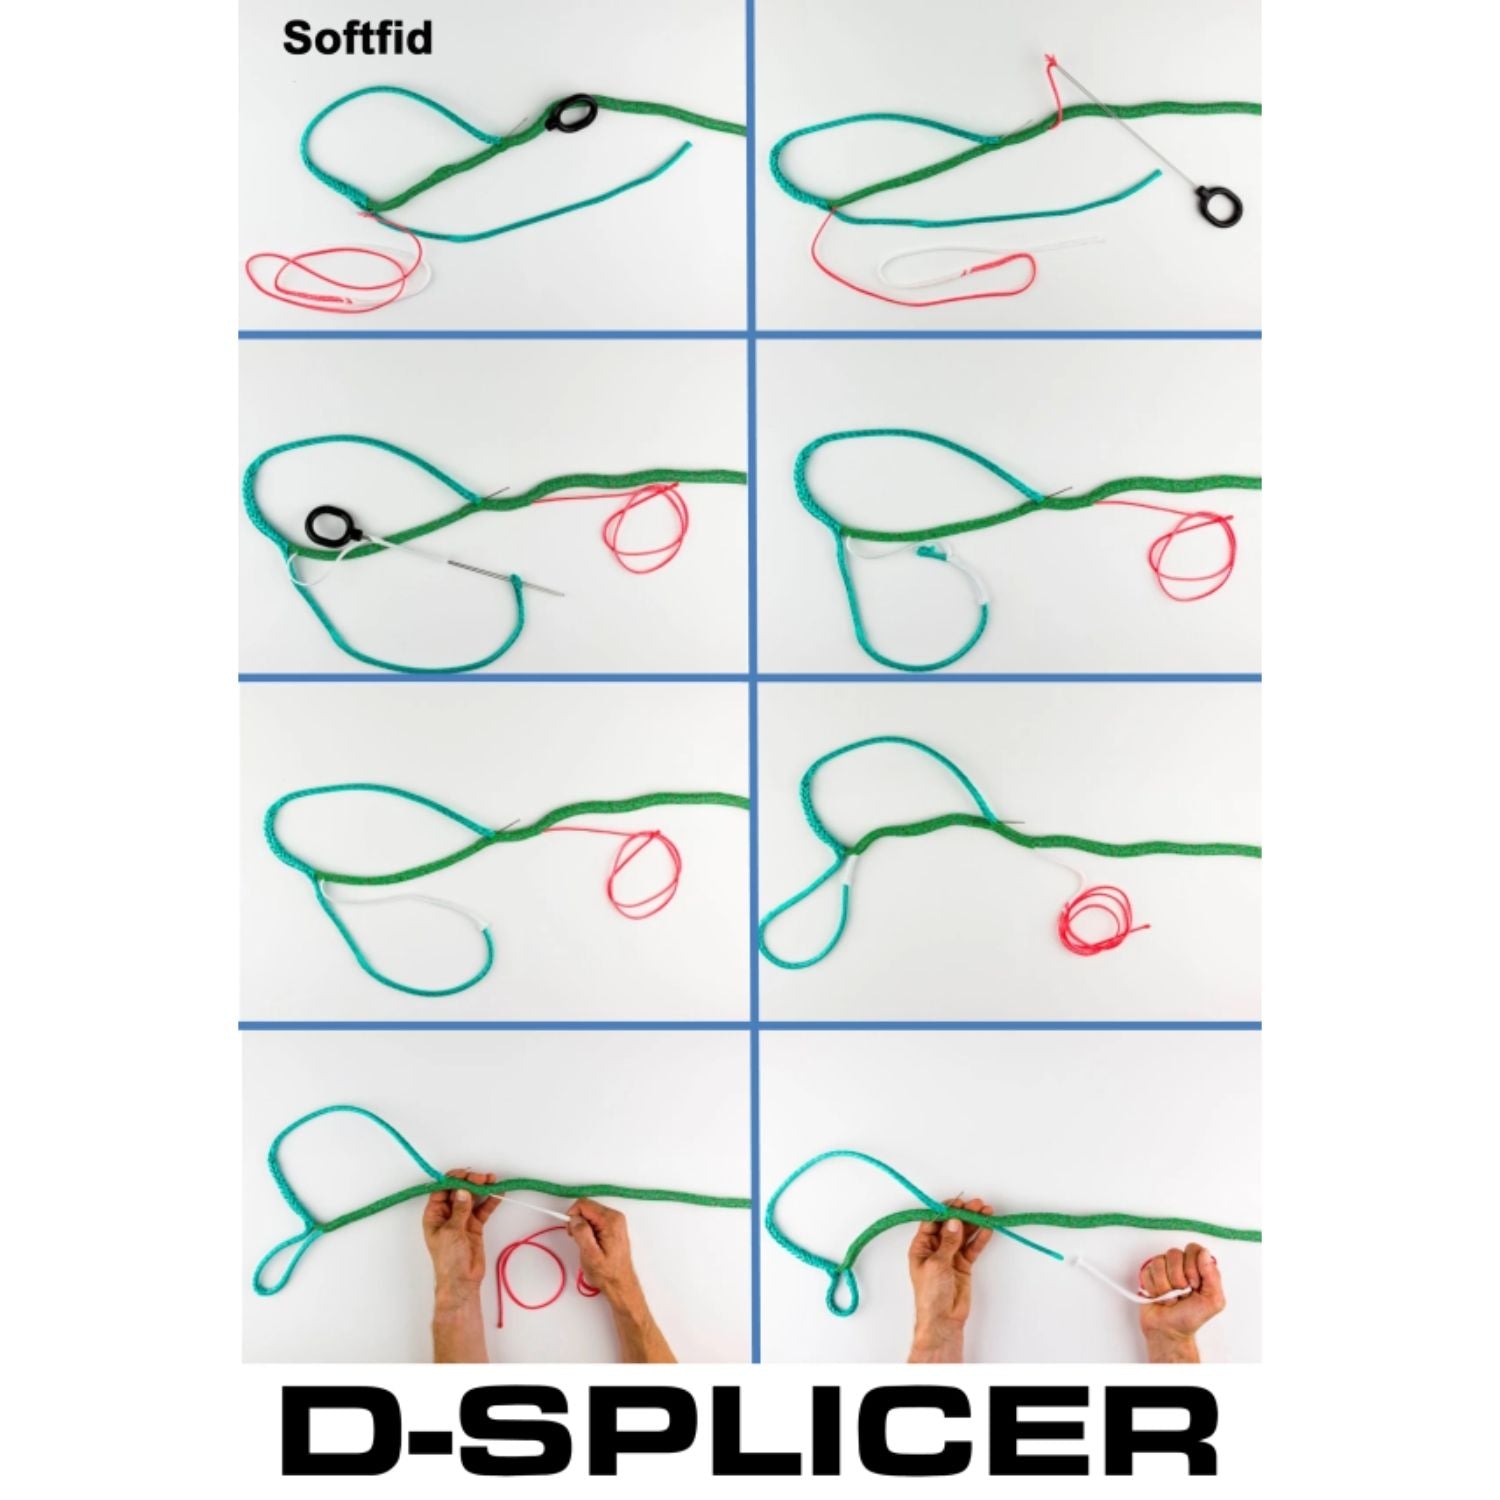 D-Splicer, S8 Softfid Splitsverktyg